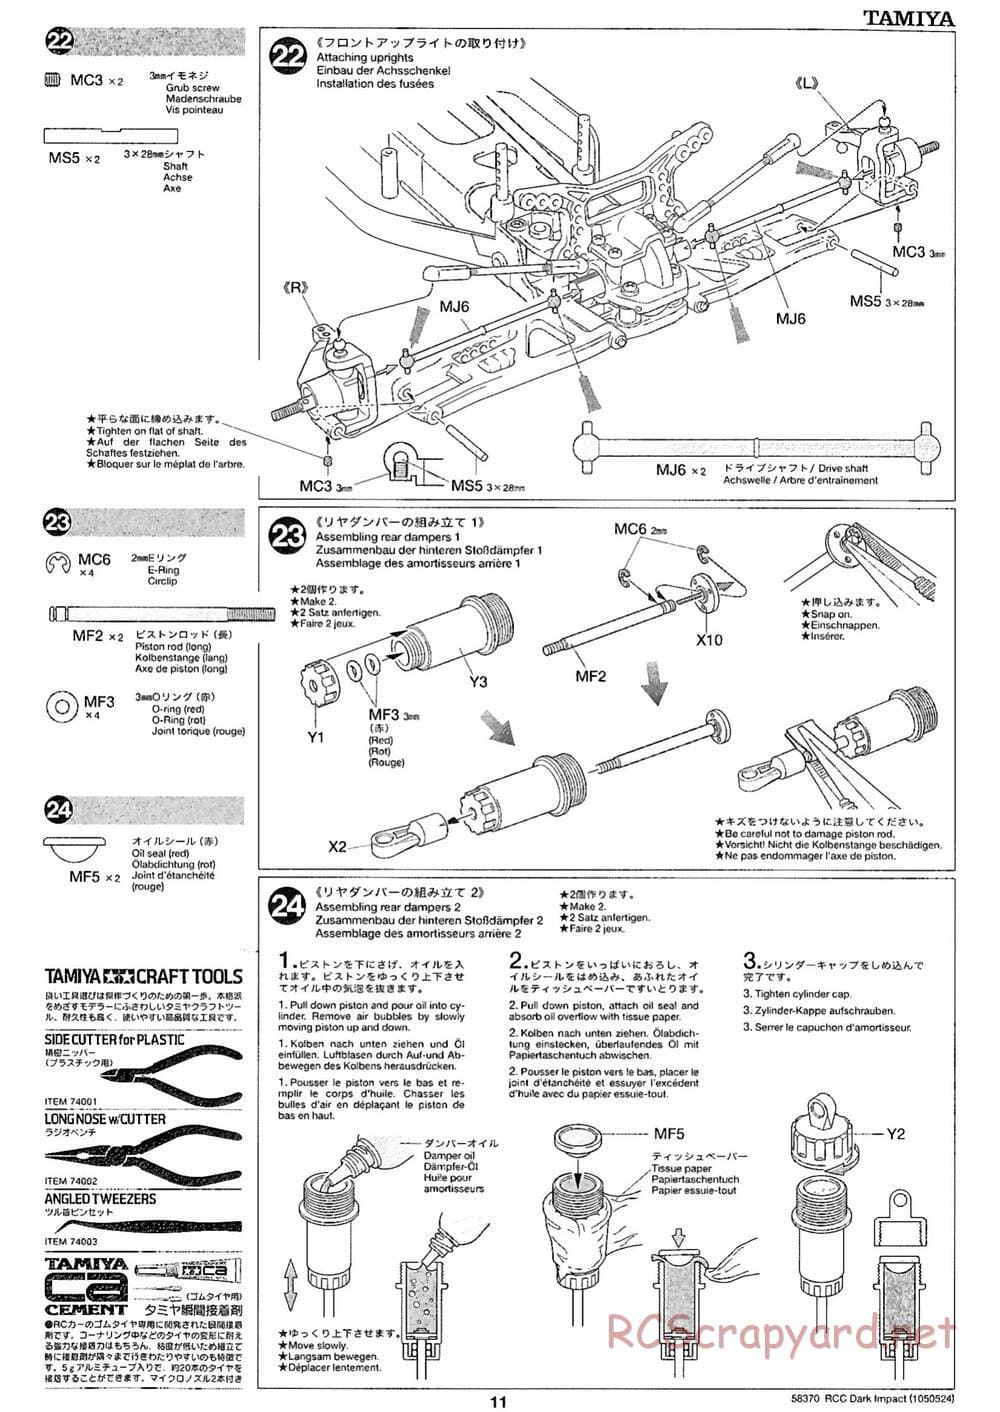 Tamiya - Dark Impact Chassis - Manual - Page 11